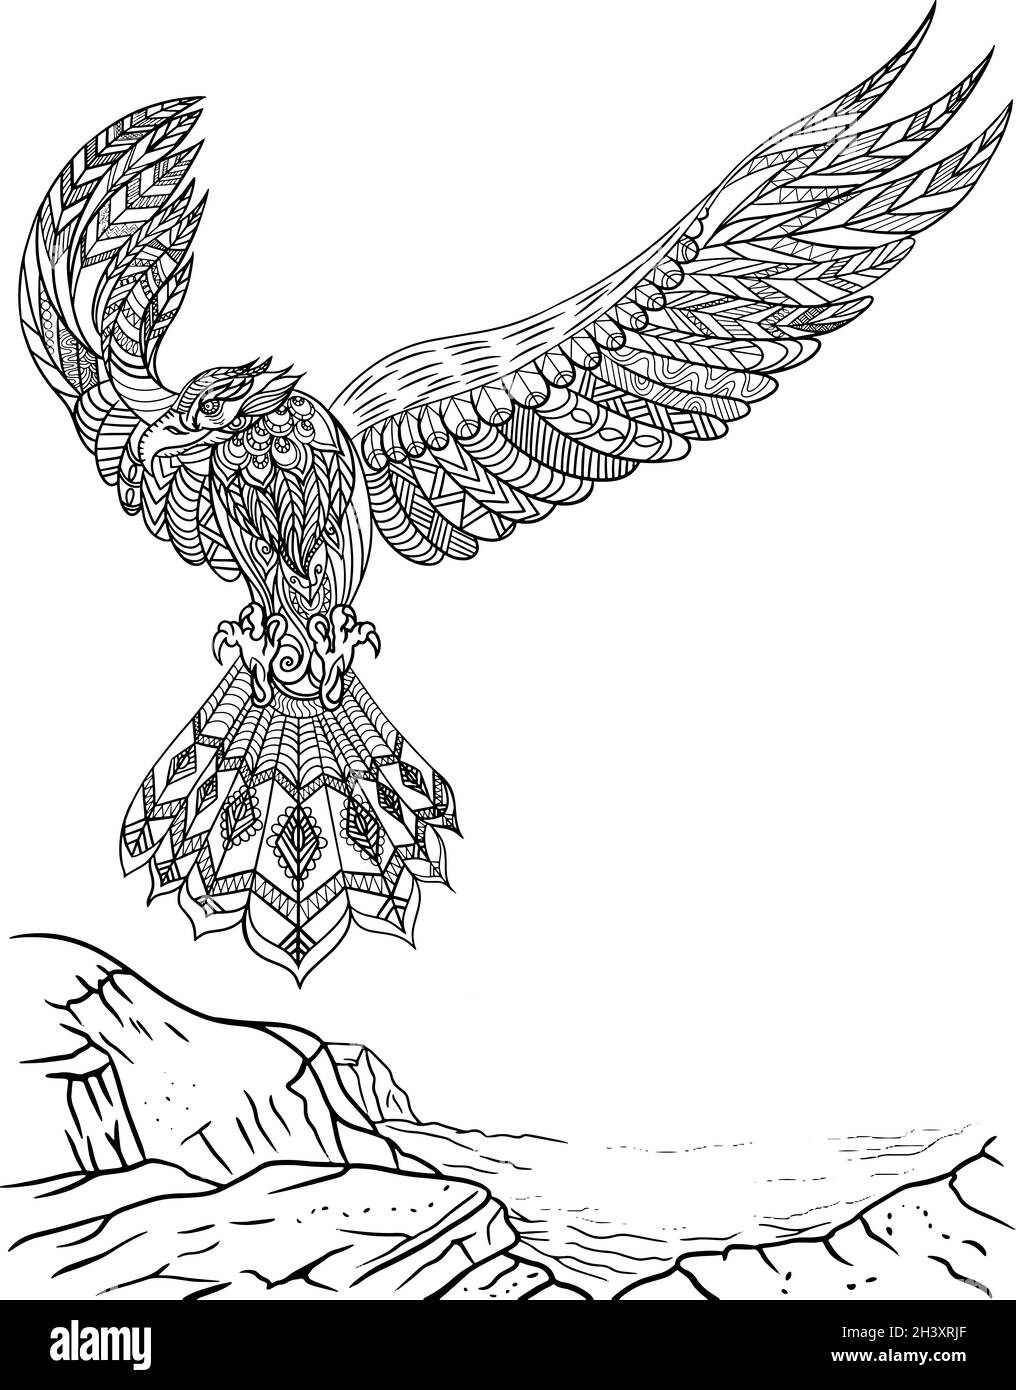 Falcon rivolto in avanti con le ali ampie aperte Flying Off A Cliff incolore Line Drawing. Bella aquila spargimento Feather colorazione Foto Stock